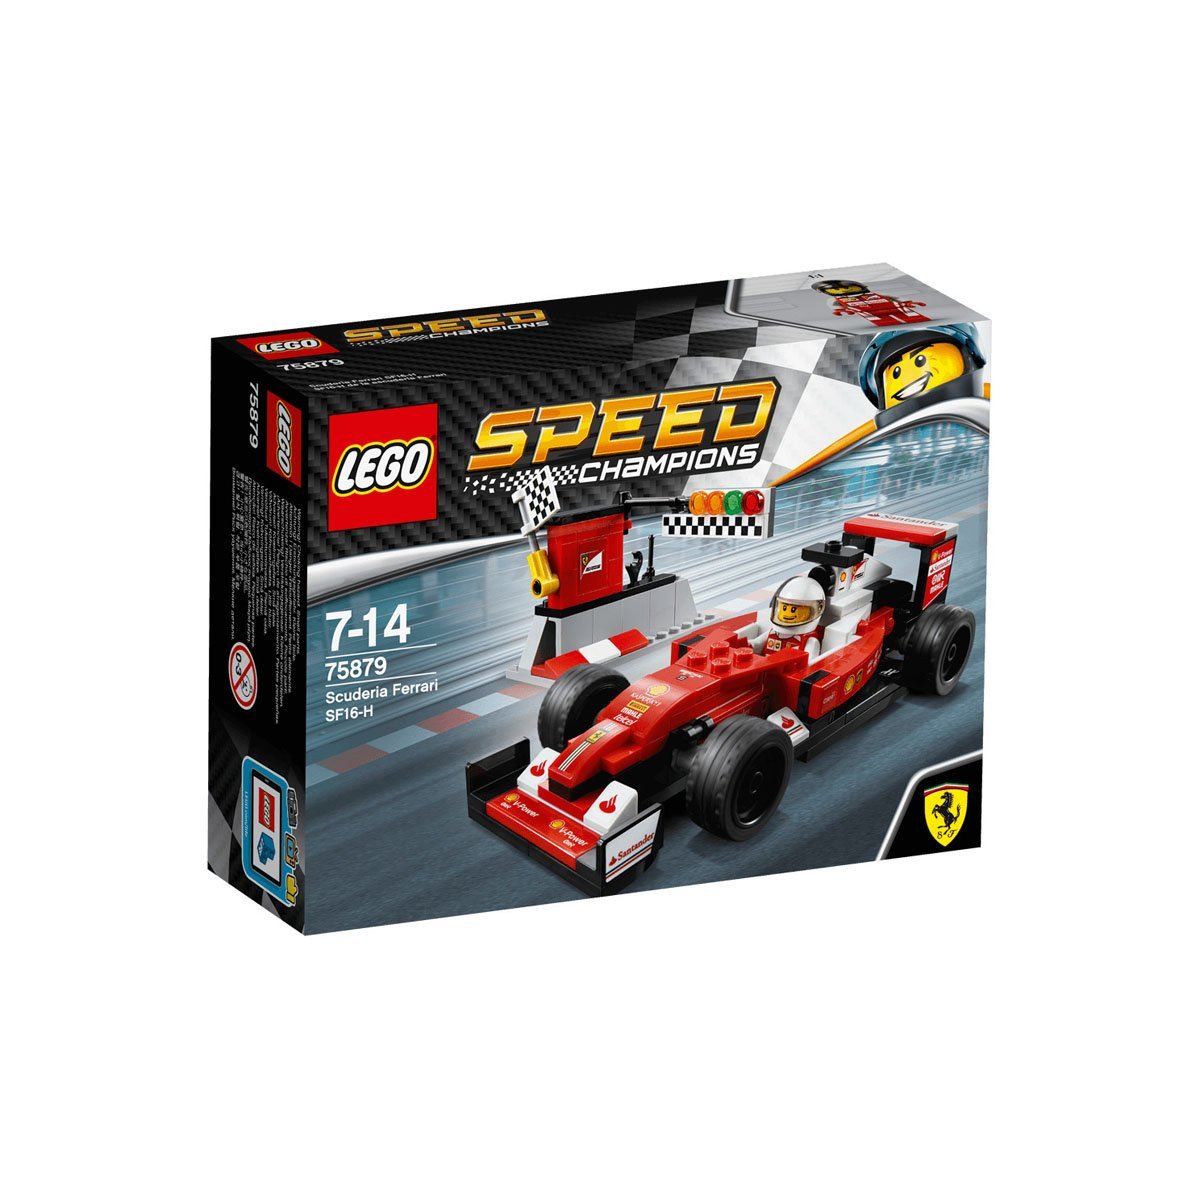 Escuderia Ferrari Sf16 H Lego